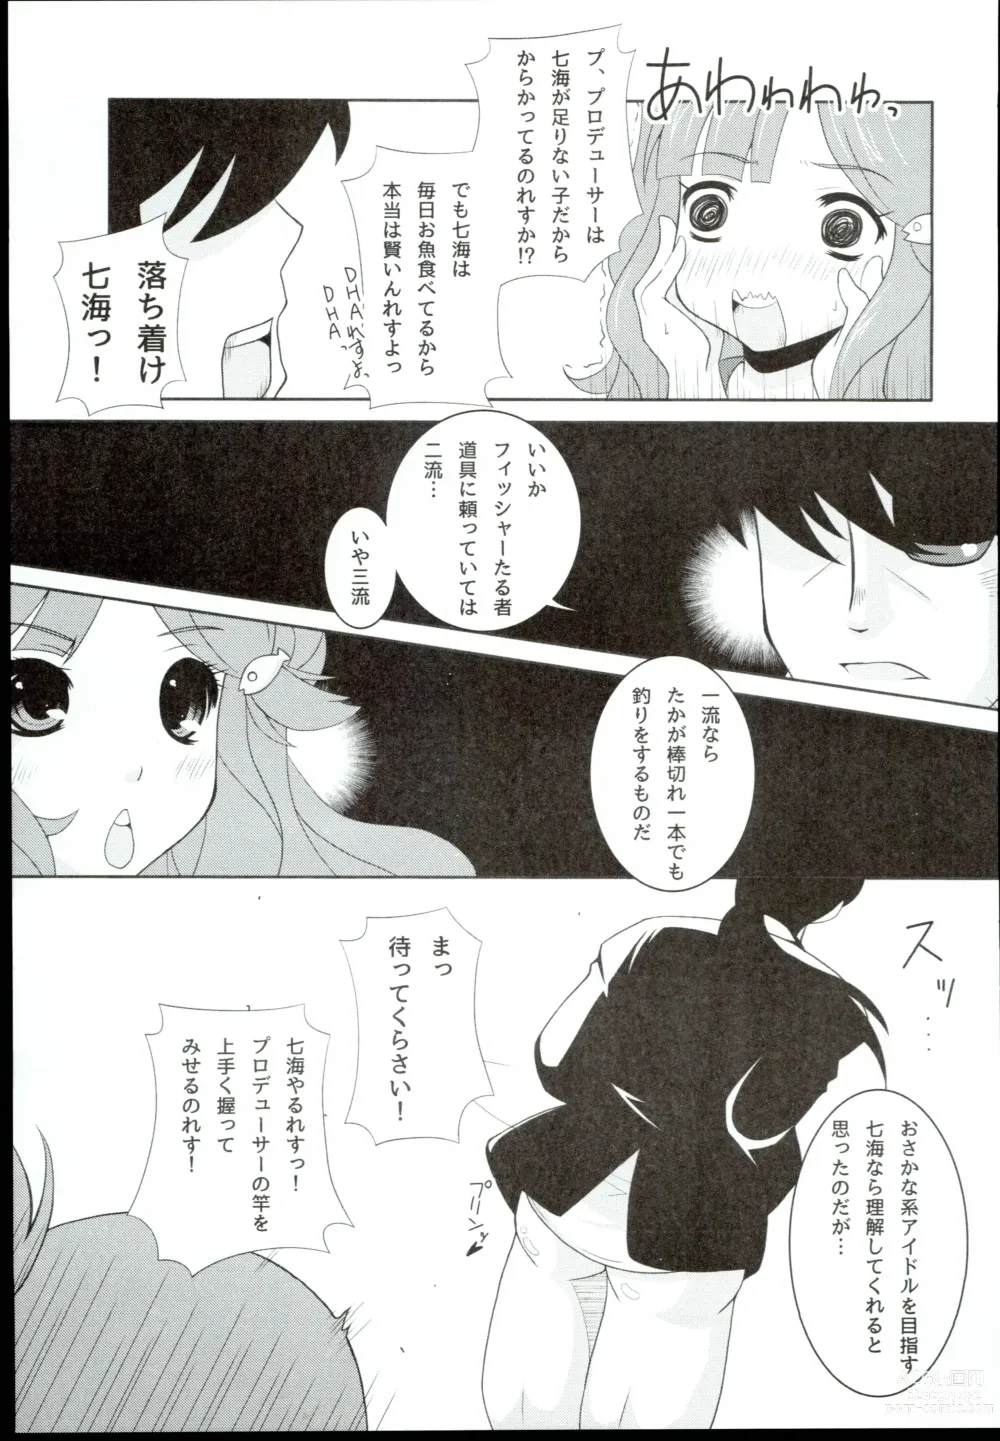 Page 9 of doujinshi Nanami Catch!